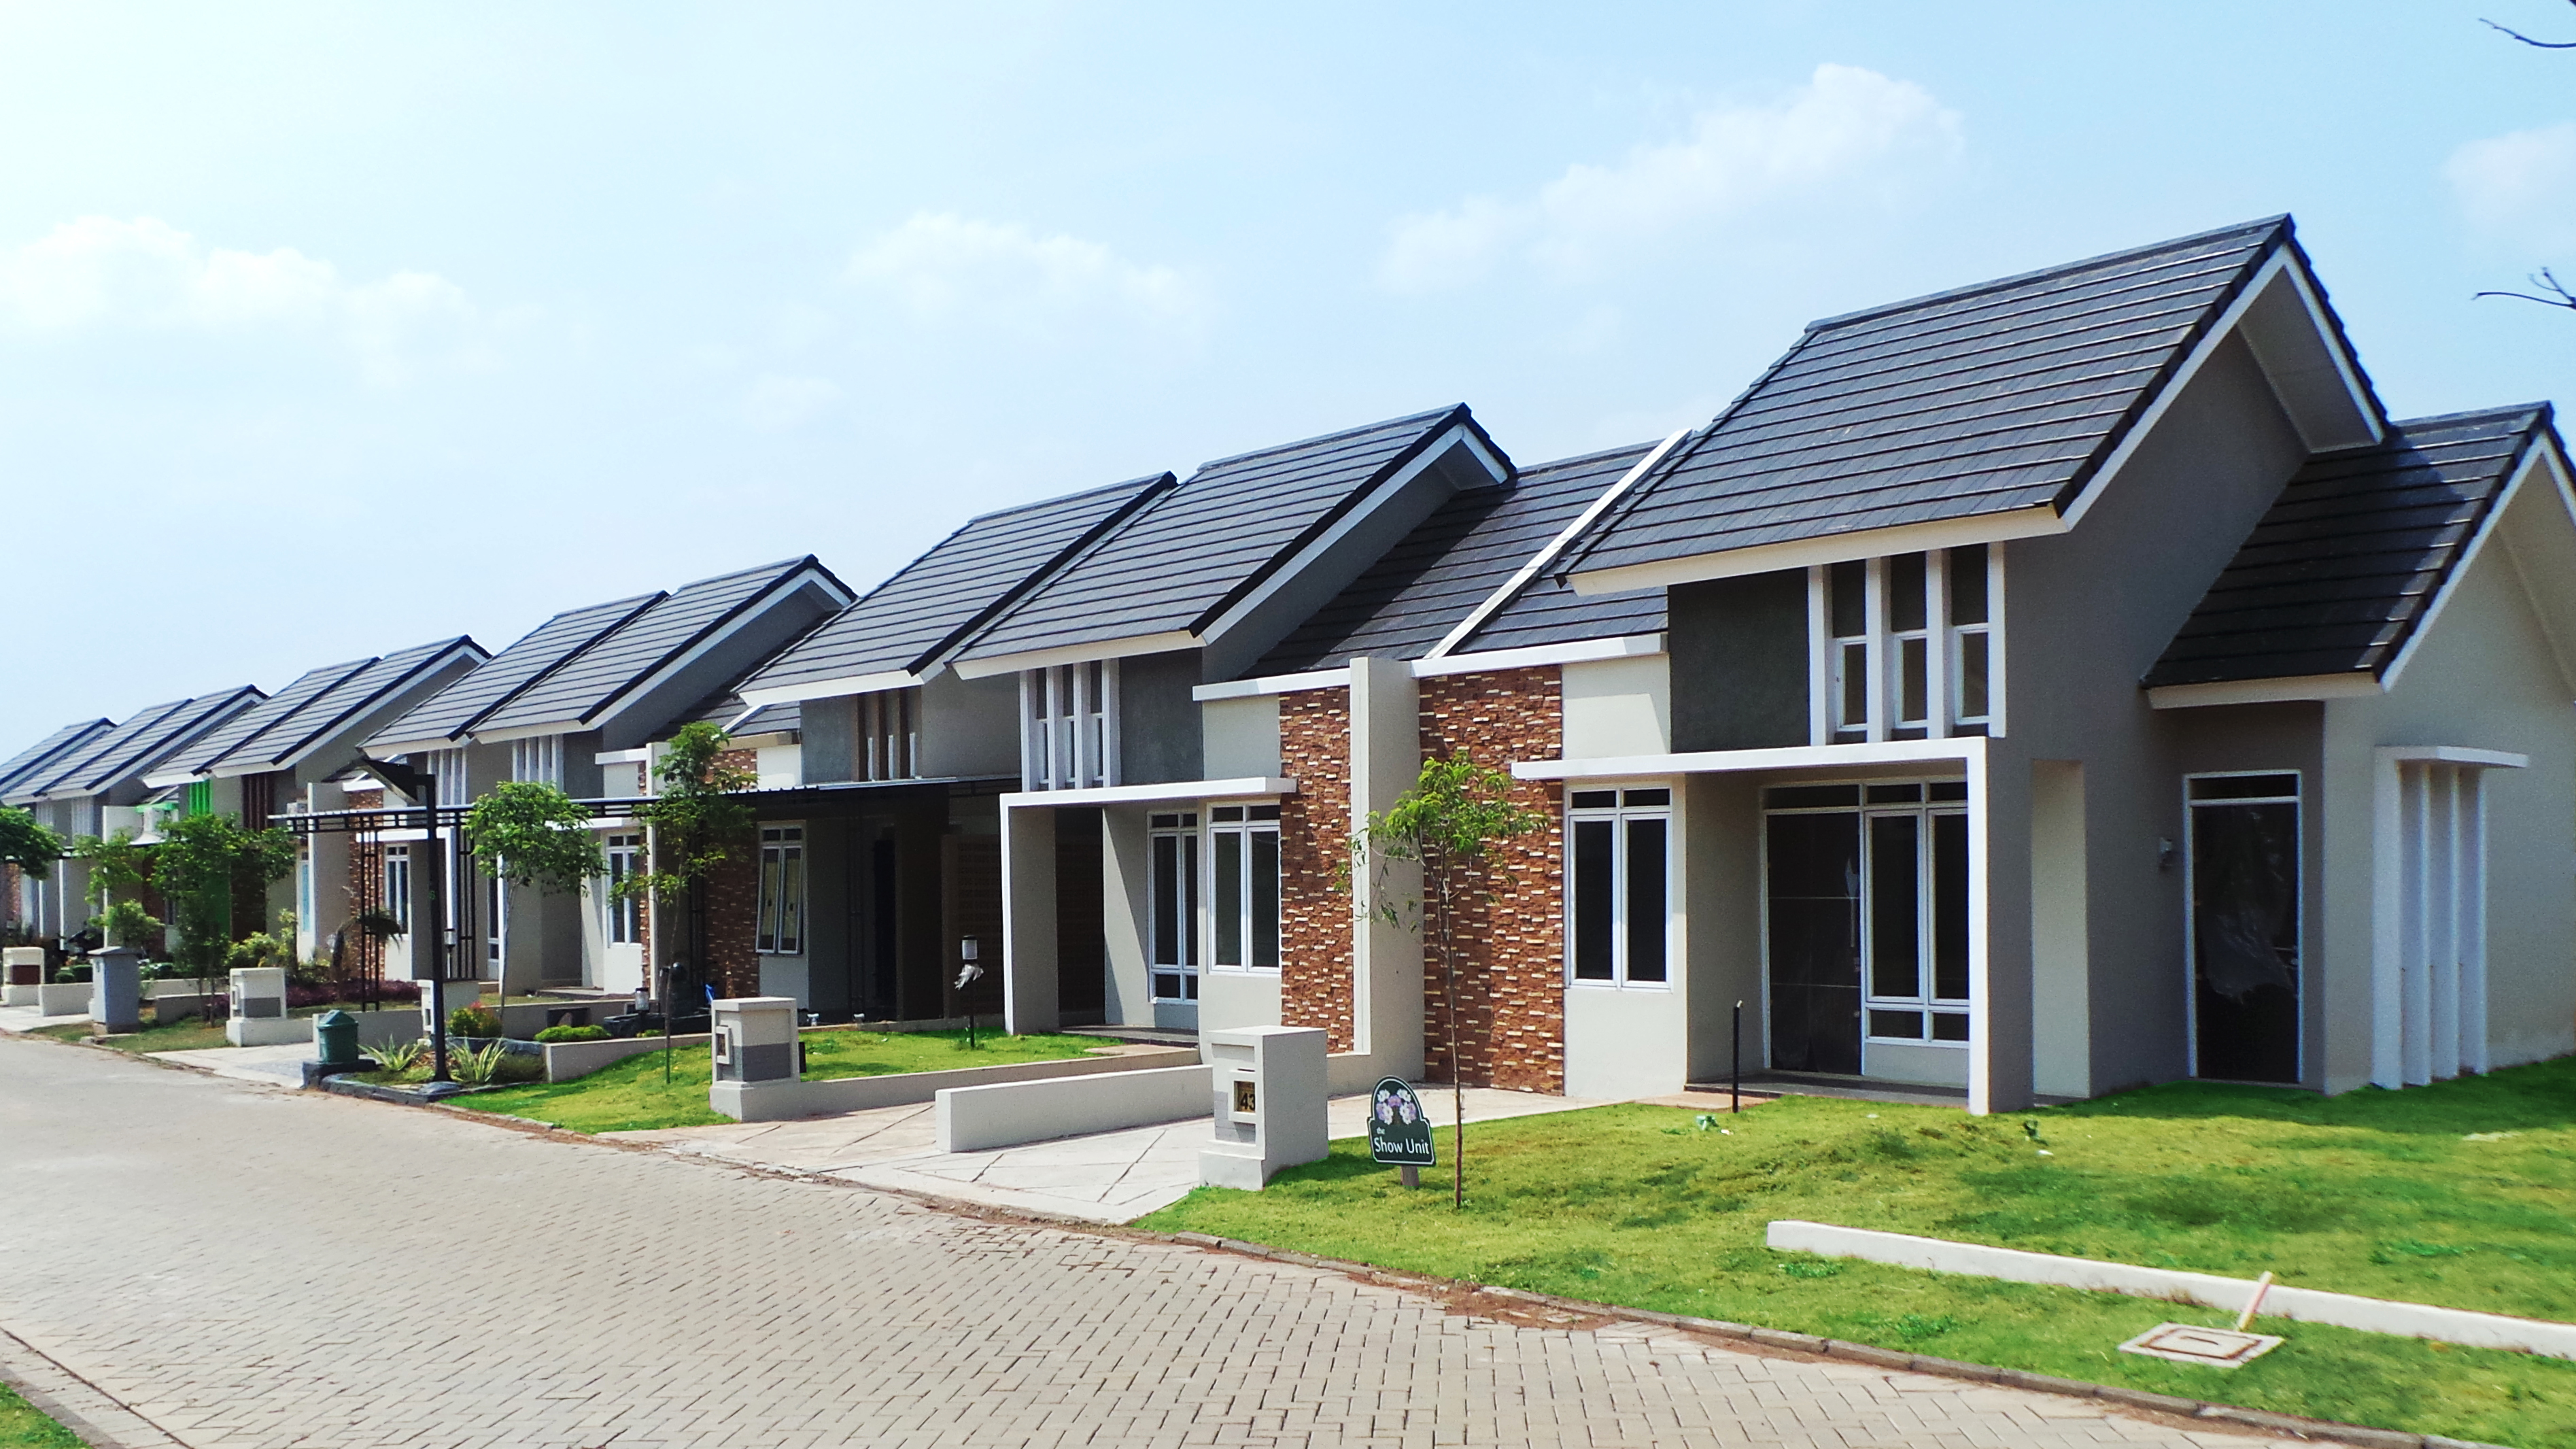 Perumahan metland persembahan developer property terbaik di indonesia 